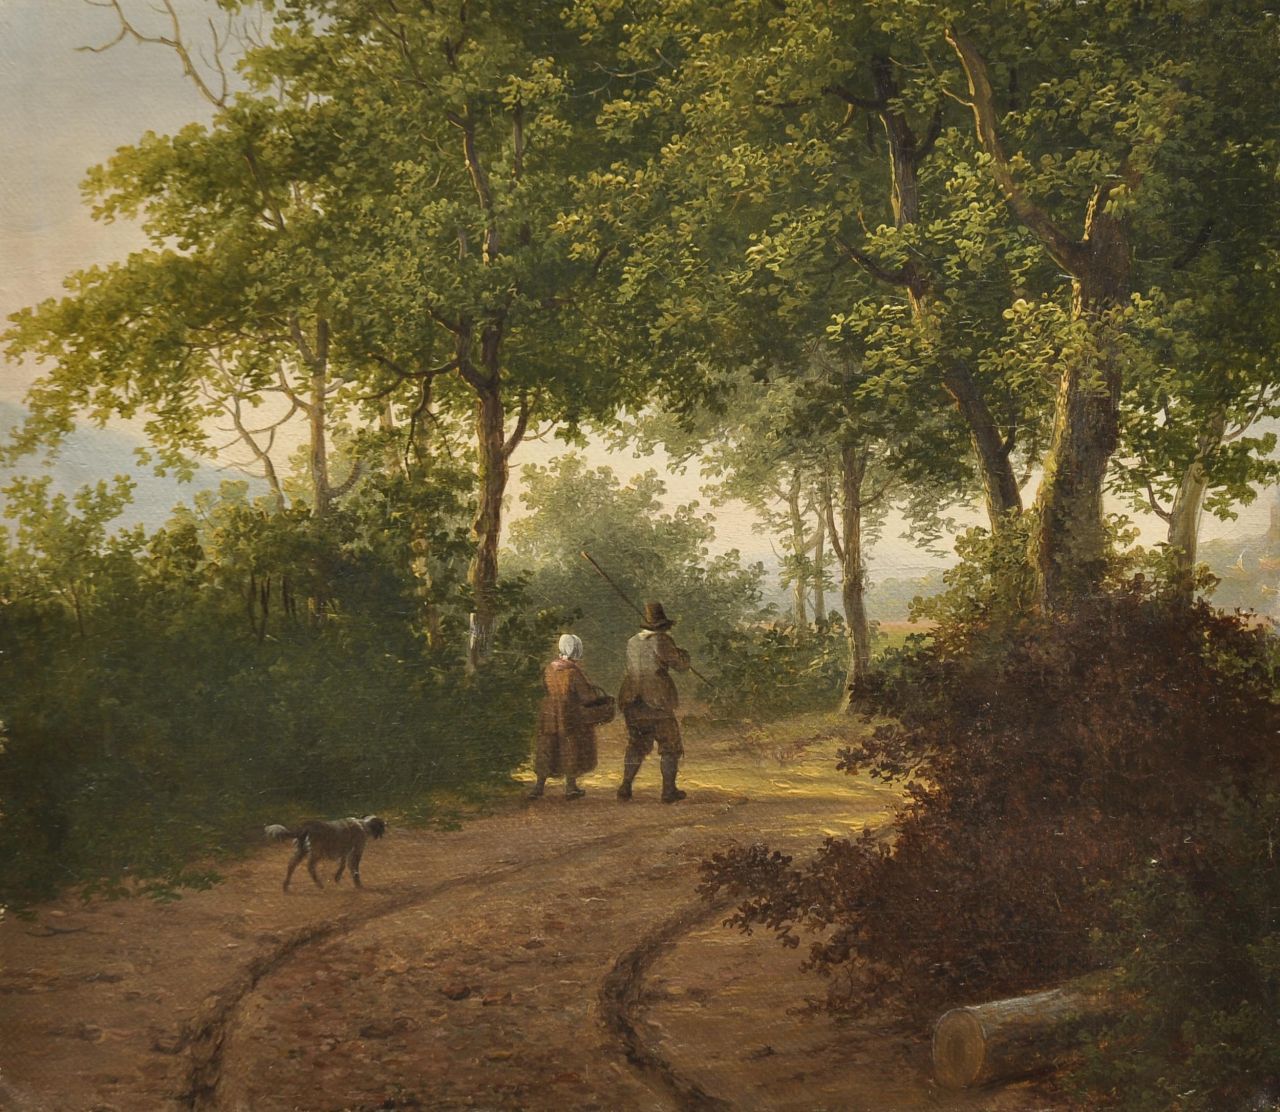 Stok J. van der | Jacobus van der Stok, Landvolk met hond op een bospad, olieverf op doek op paneel 24,3 x 27,6 cm